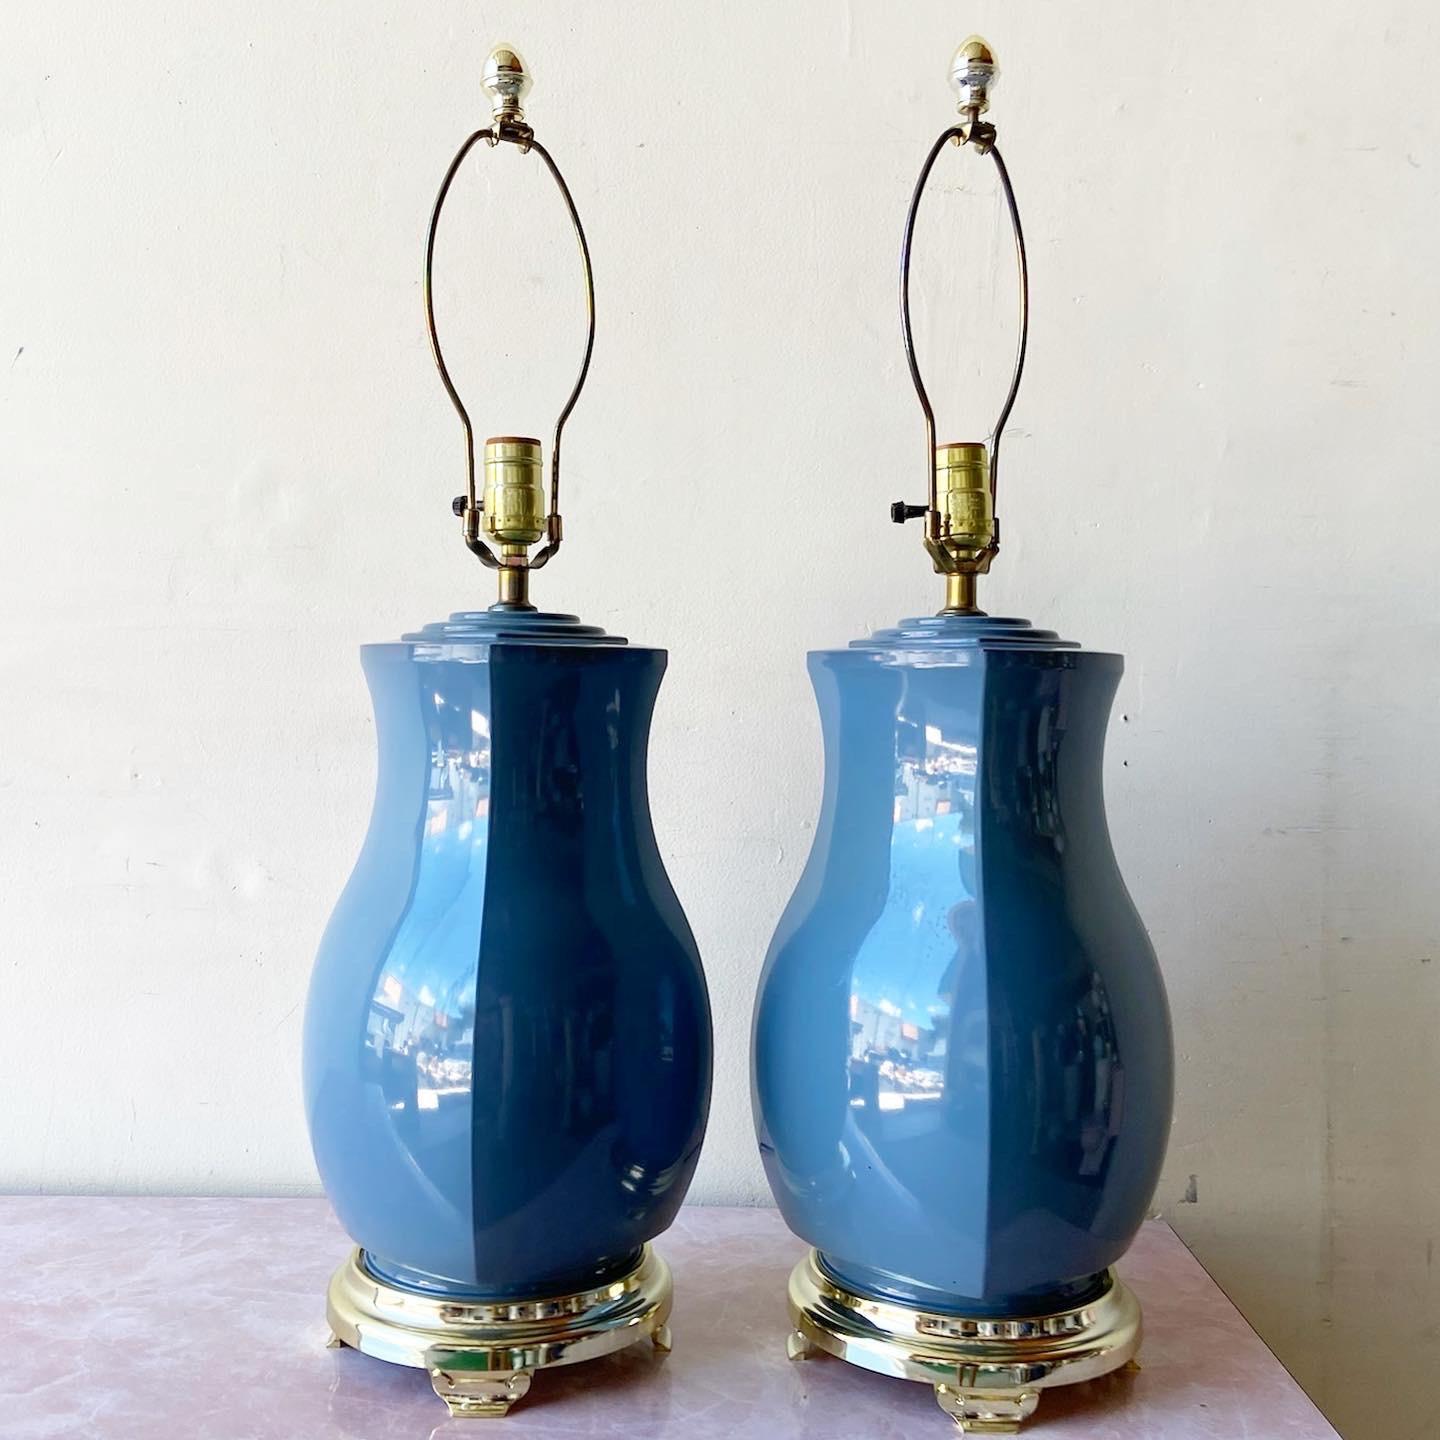 Superbe paire de lampes de table postmodernes en porcelaine. La carrosserie présente un lustre bleu sur quatre faces.

Éclairage à 3 voies
